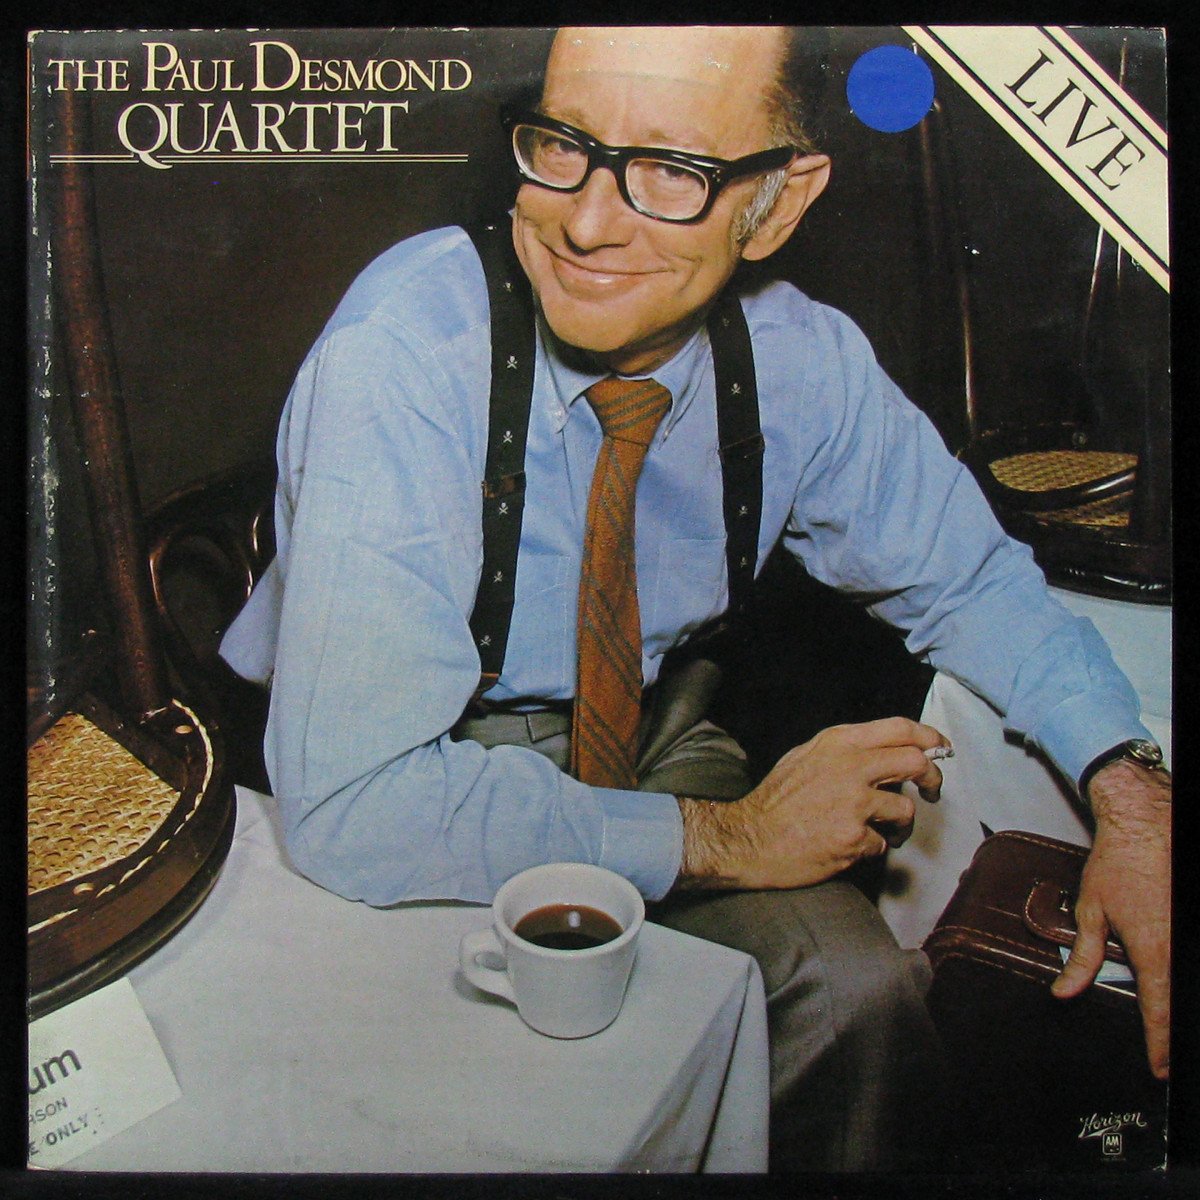 Paul desmond. Paul Desmond albums. Paul Desmond Quartet. The Paul Desmond Quartet – Live.